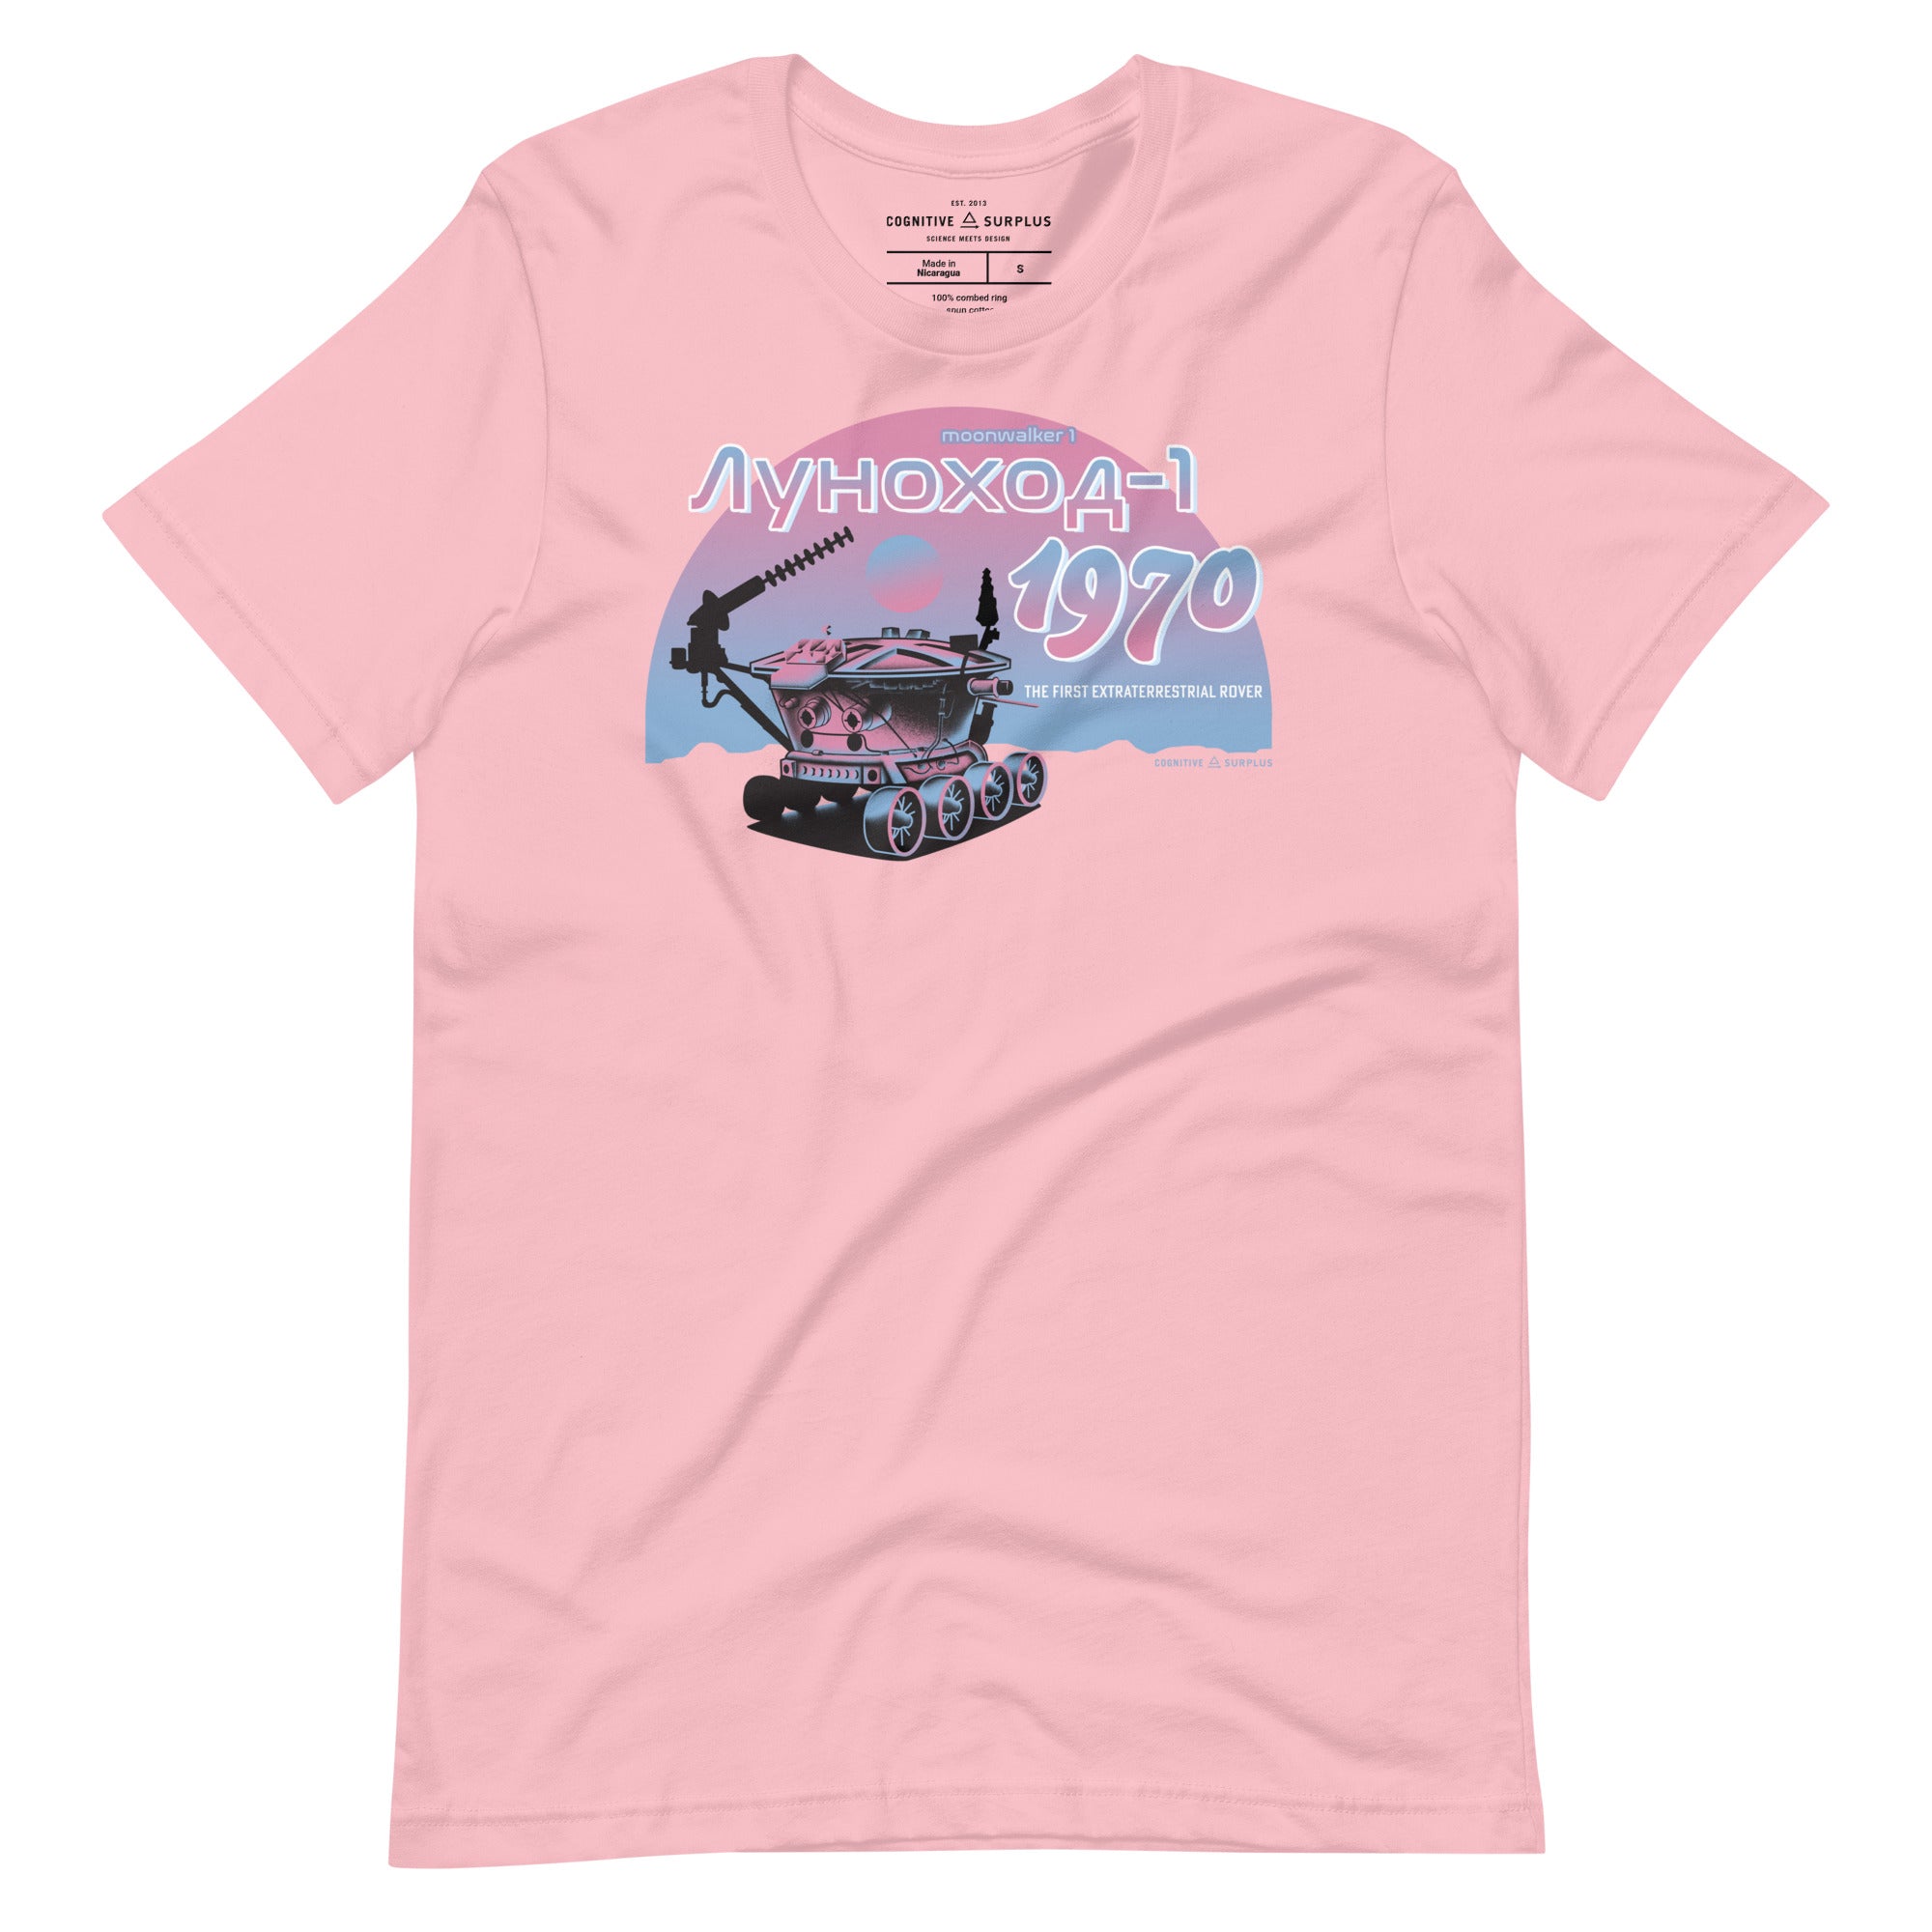 unisex-staple-t-shirt-pink-front-654a70e8636ee.jpg